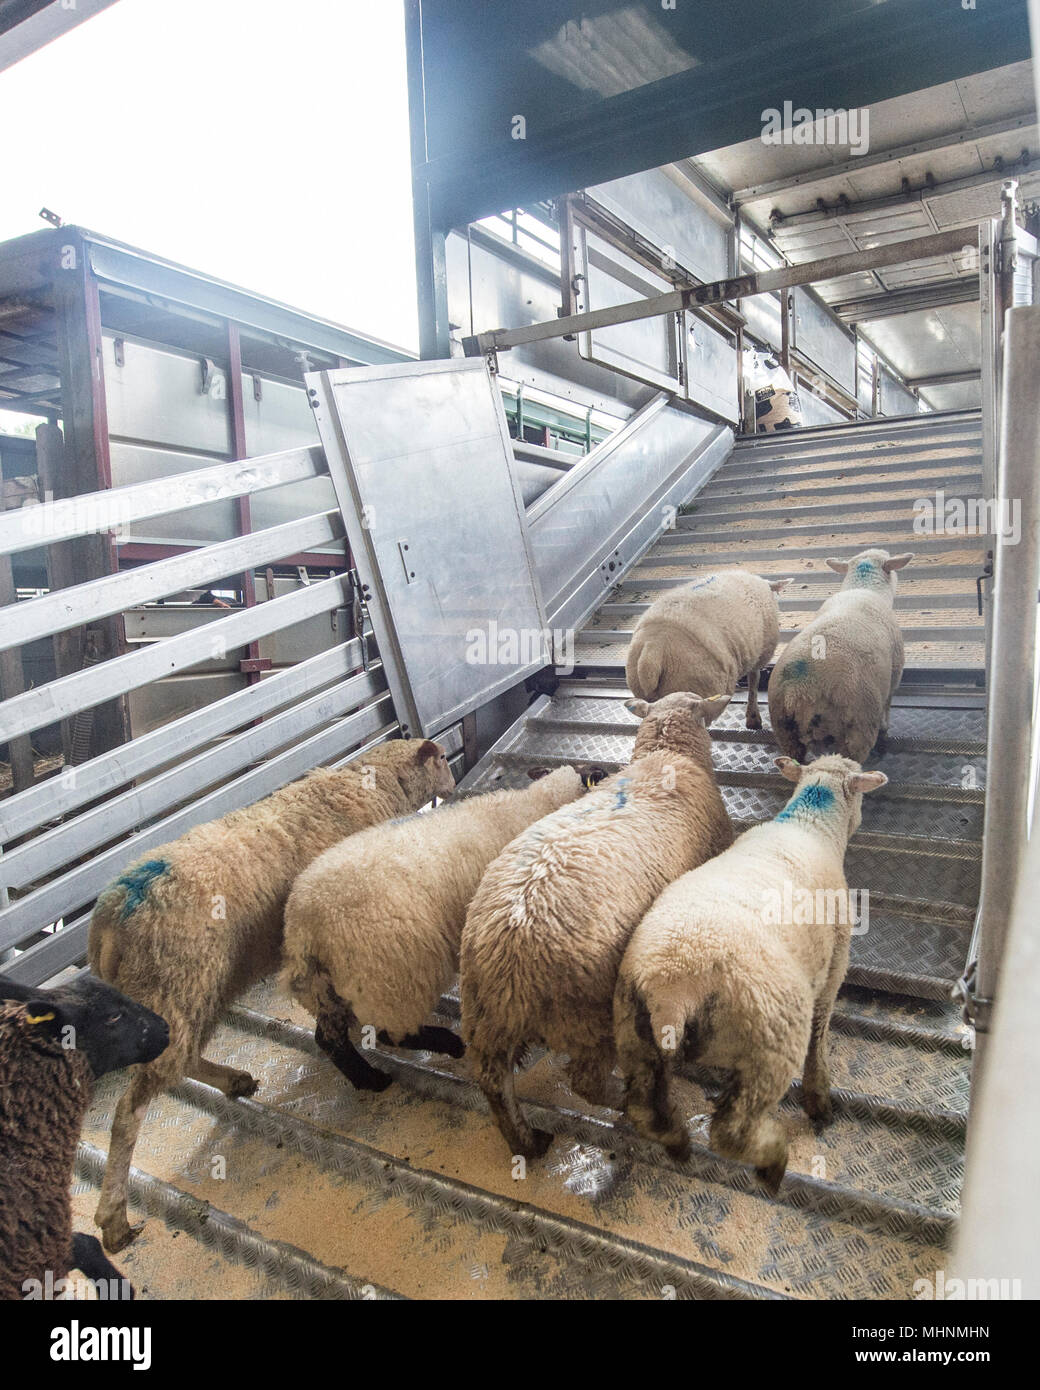 Les moutons chargement sur camion pour transport Banque D'Images